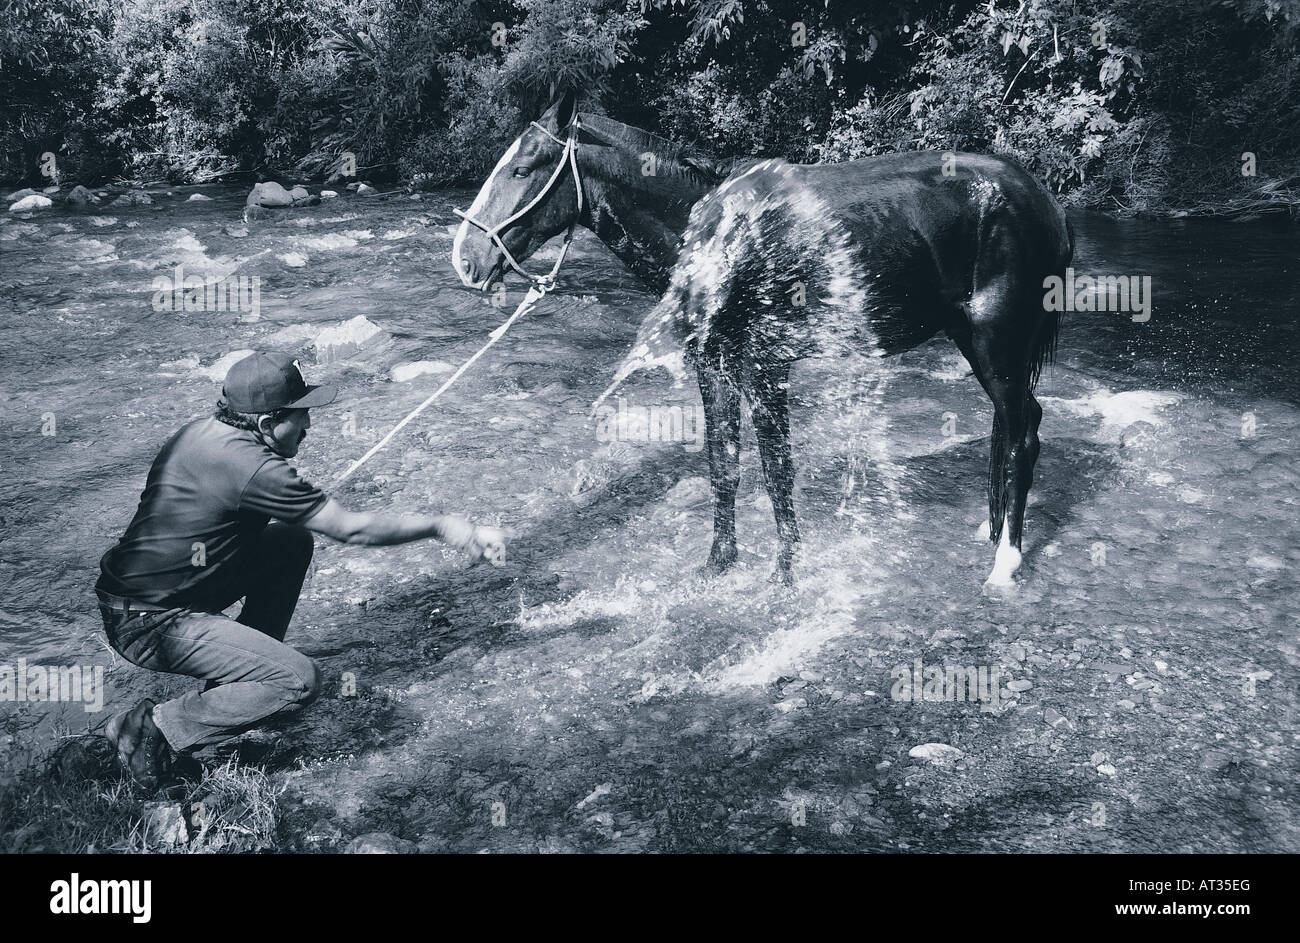 Un homme lave son cheval dans la rivière, l'Équateur Banque D'Images